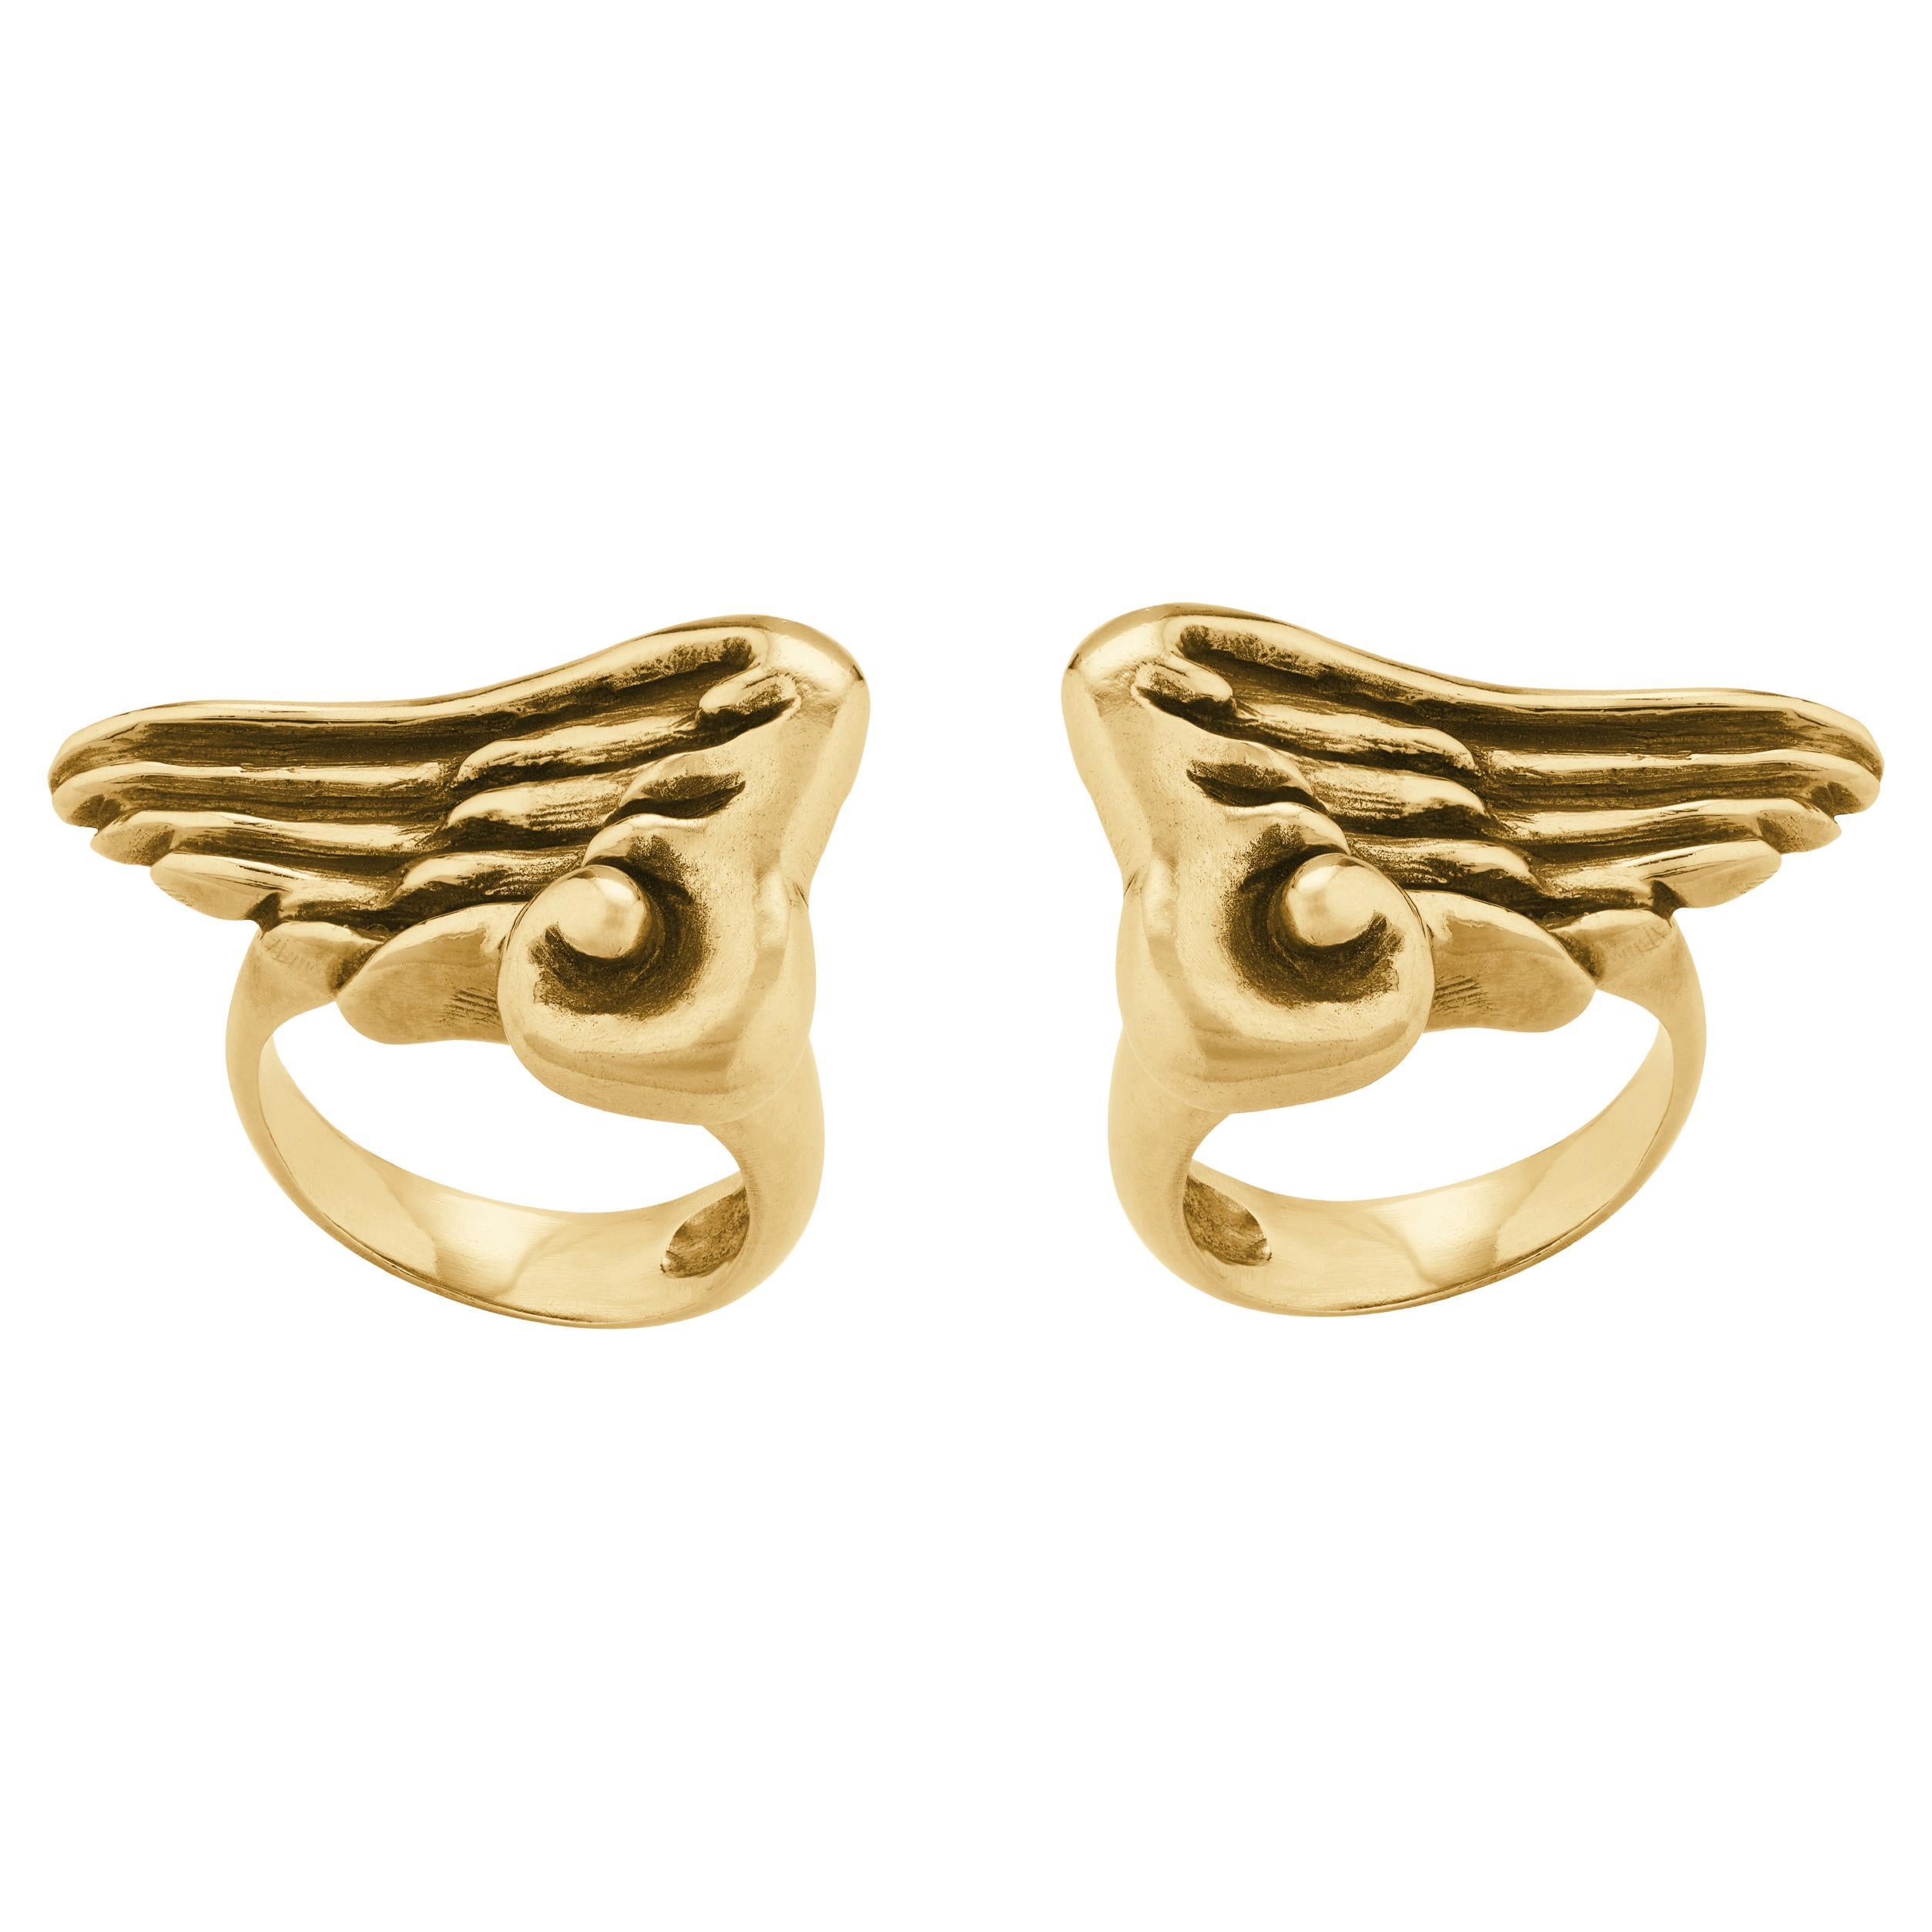 Betony Vernon "Wing Rings Set" Rings 18 Karat Gold in Stock For Sale